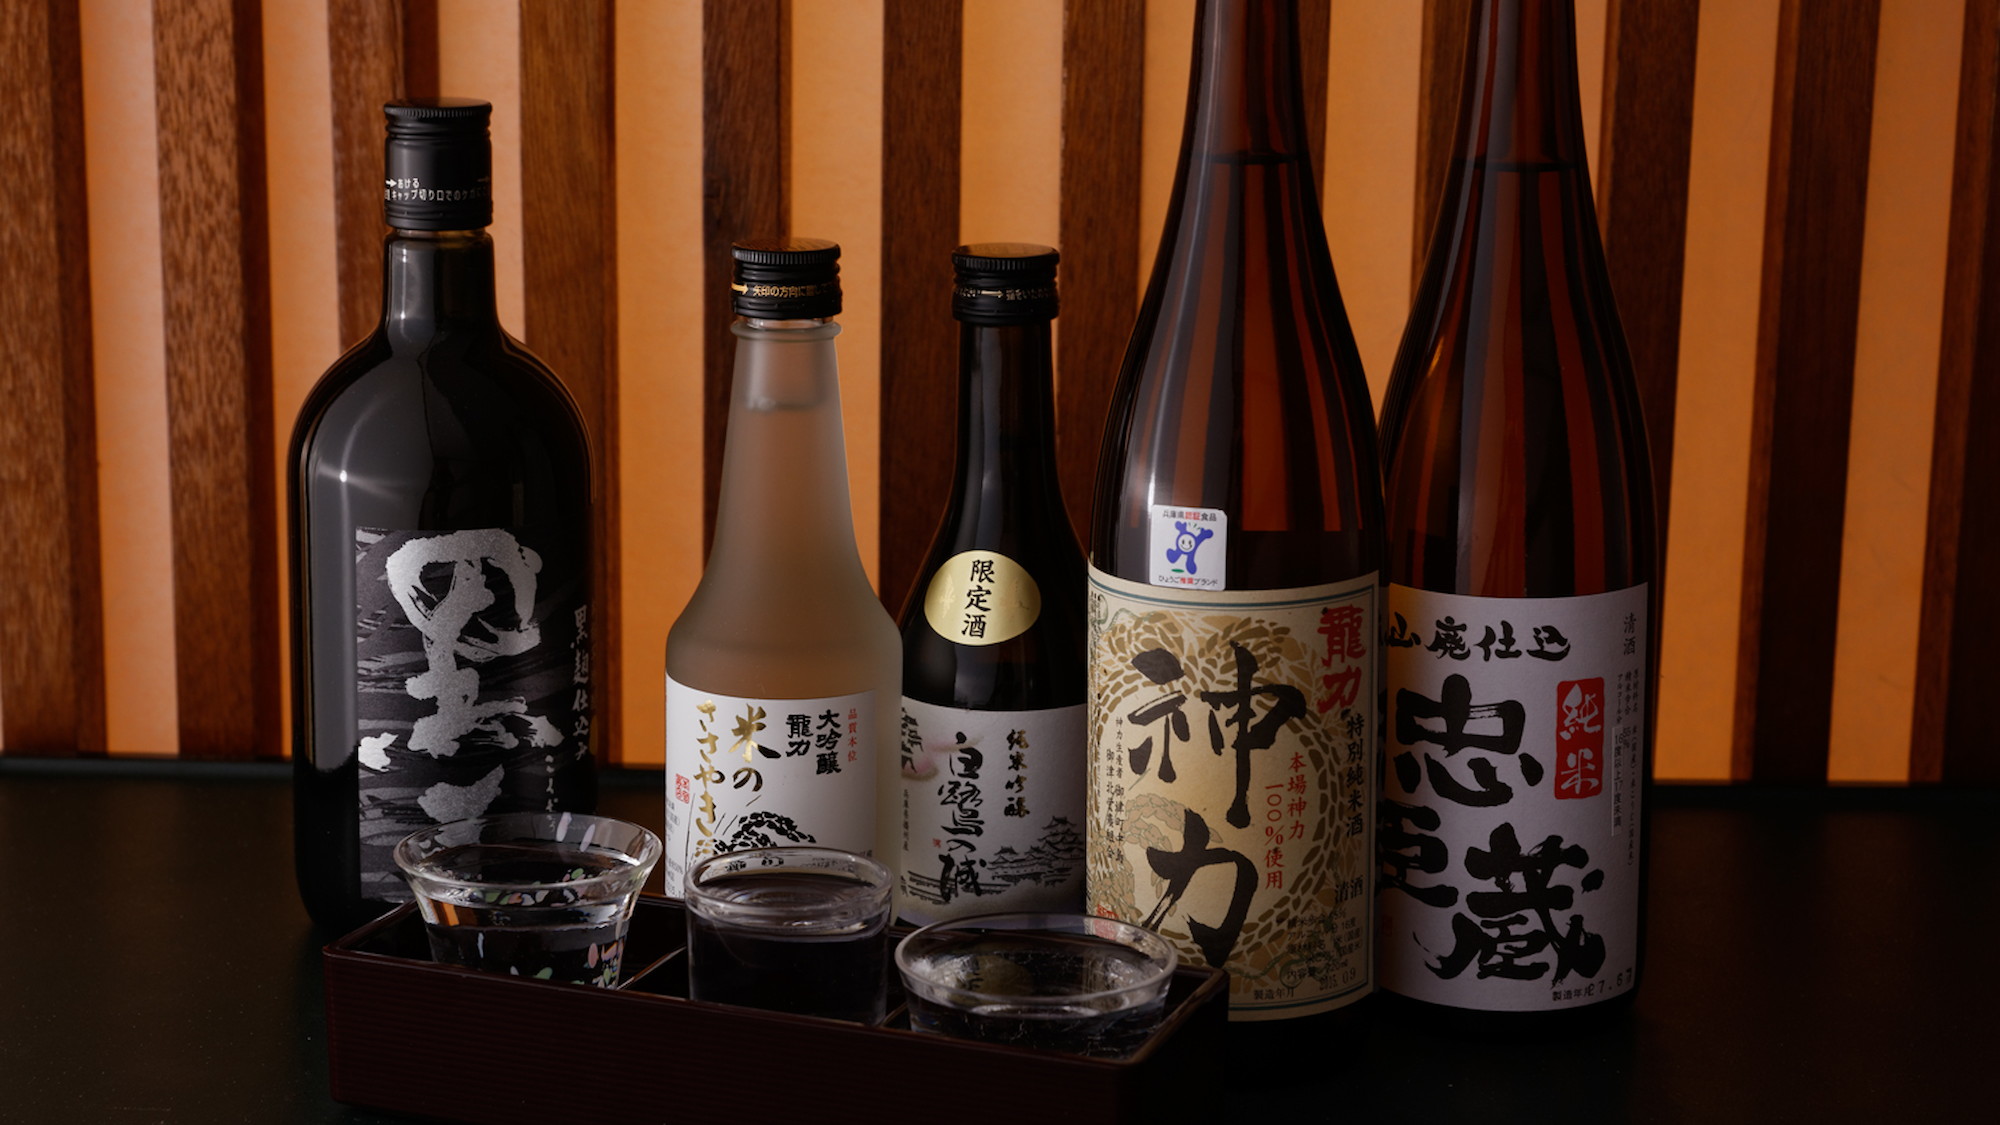 【お酒】地元兵庫の酒造龍力の純米酒「神力」をはじめ様々な地酒を揃えております。